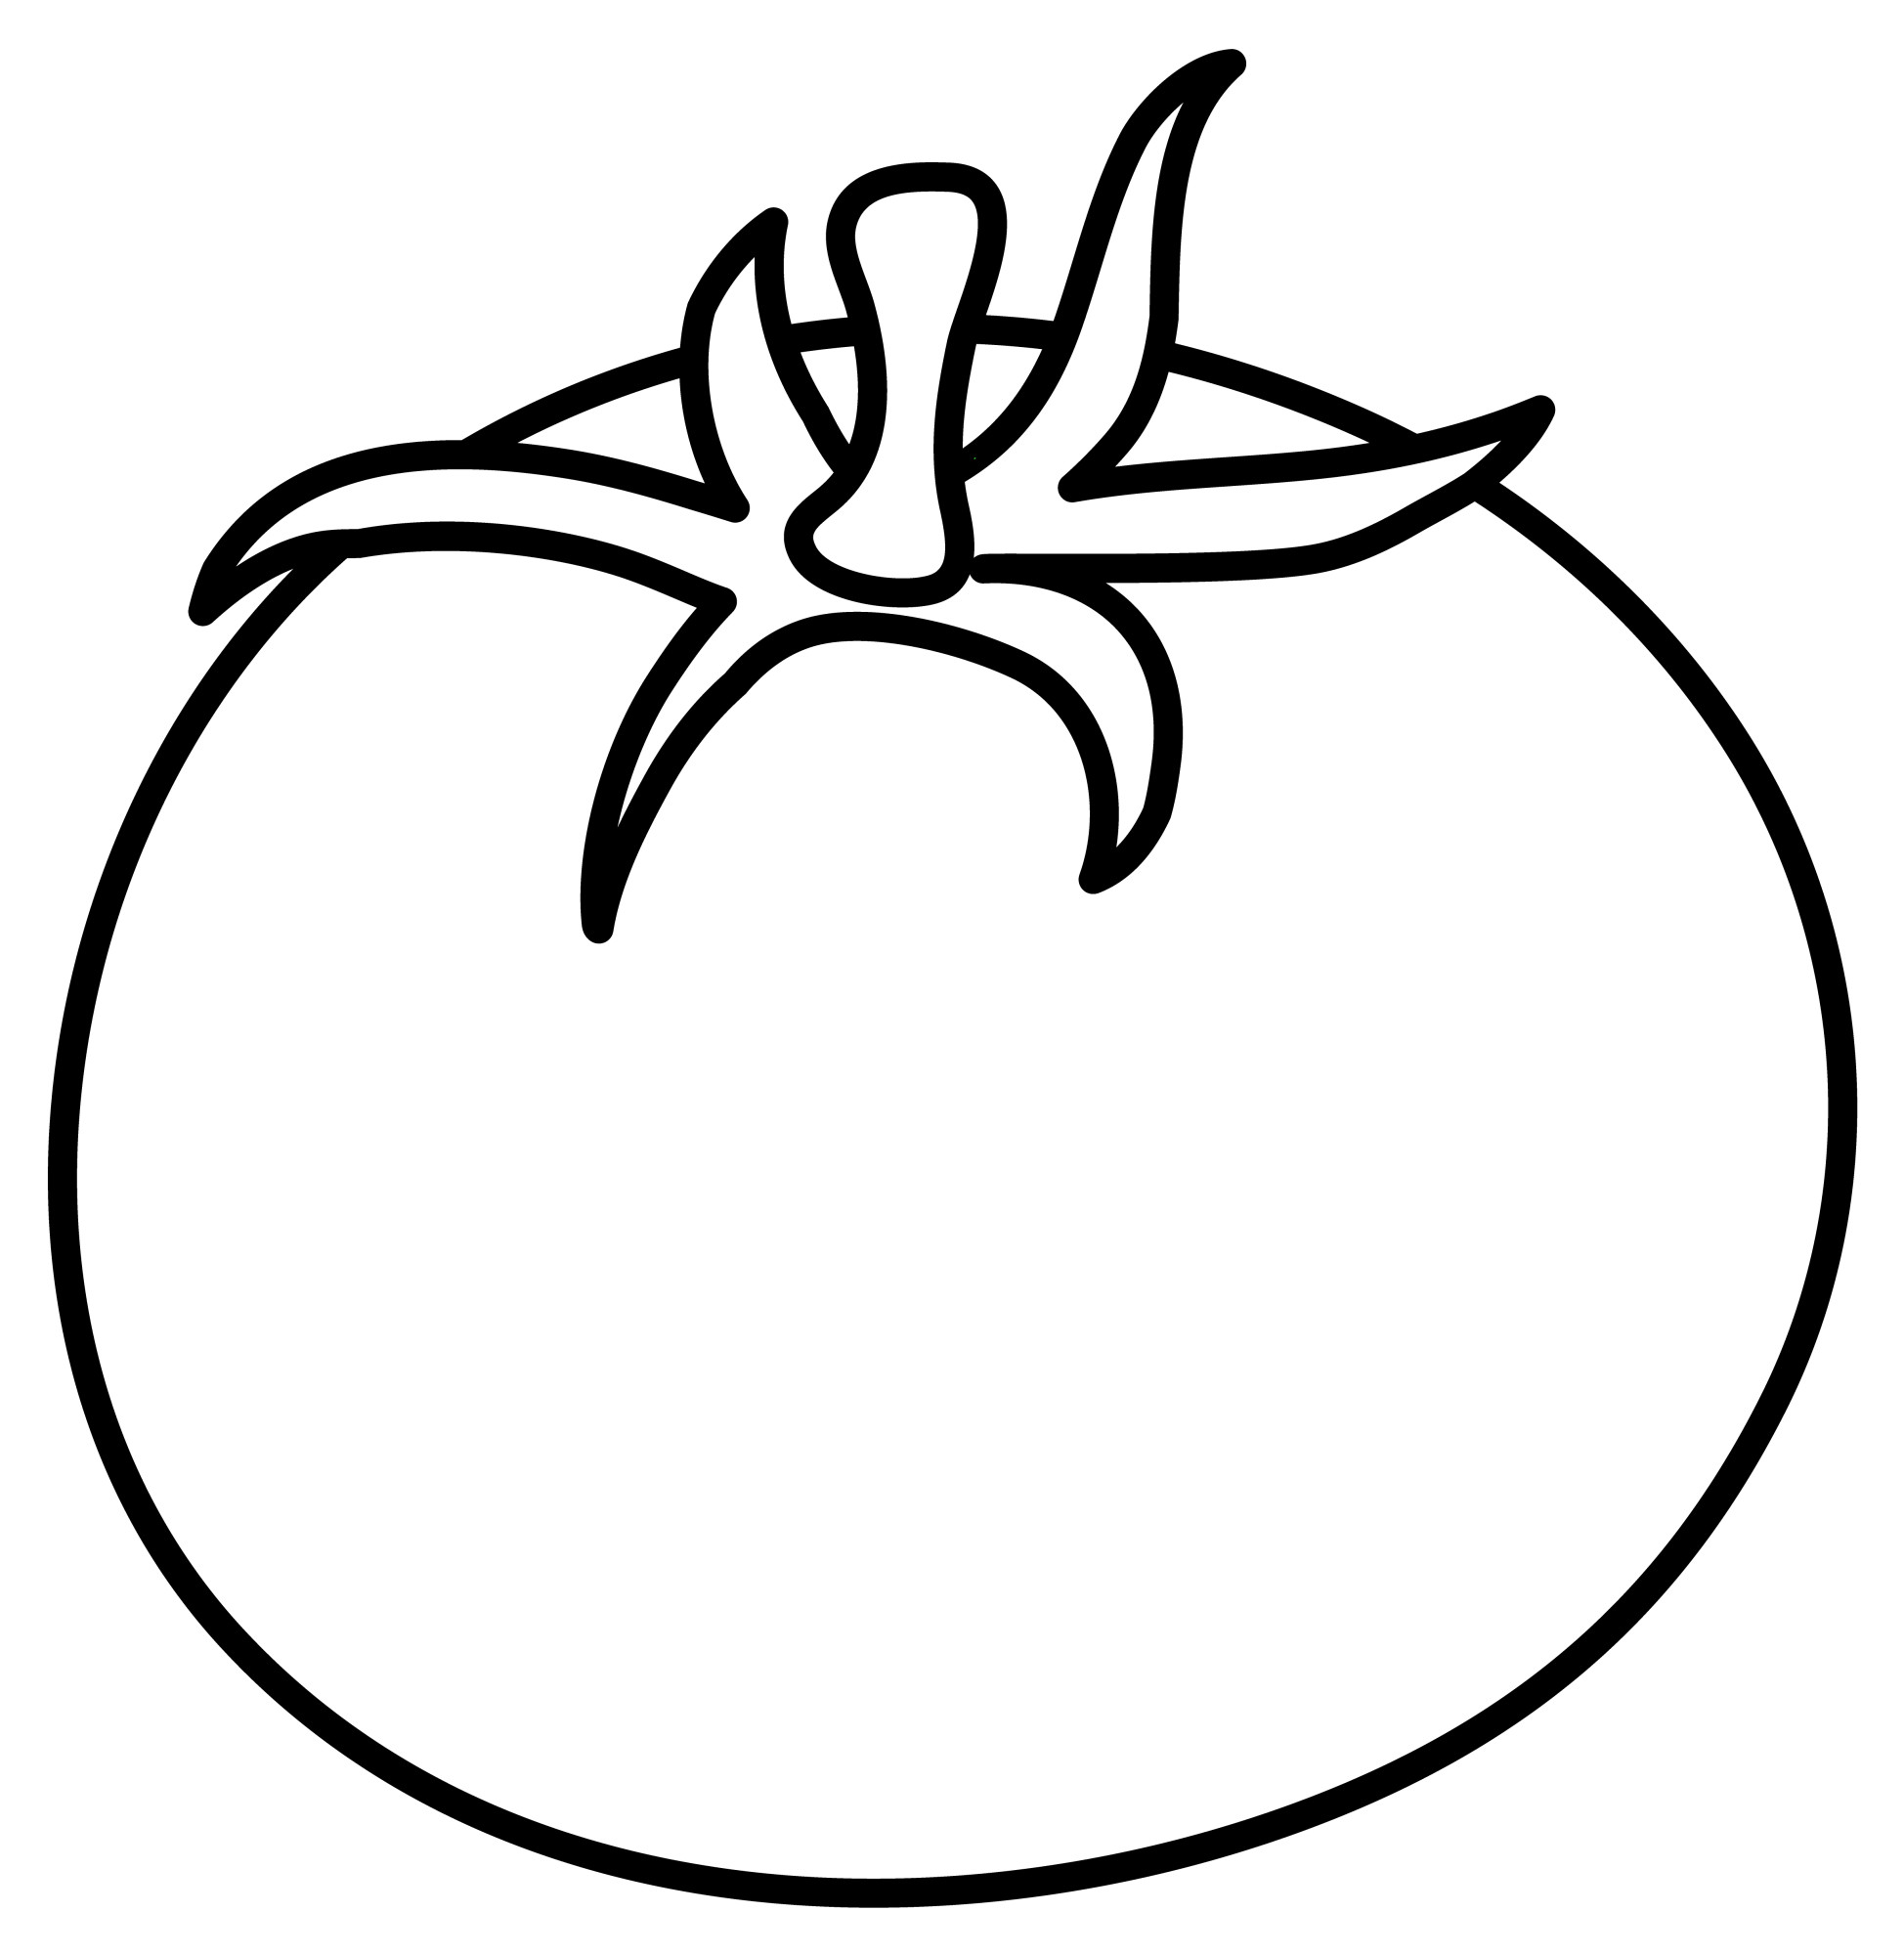 Раскраска для детей: помидор с грядки